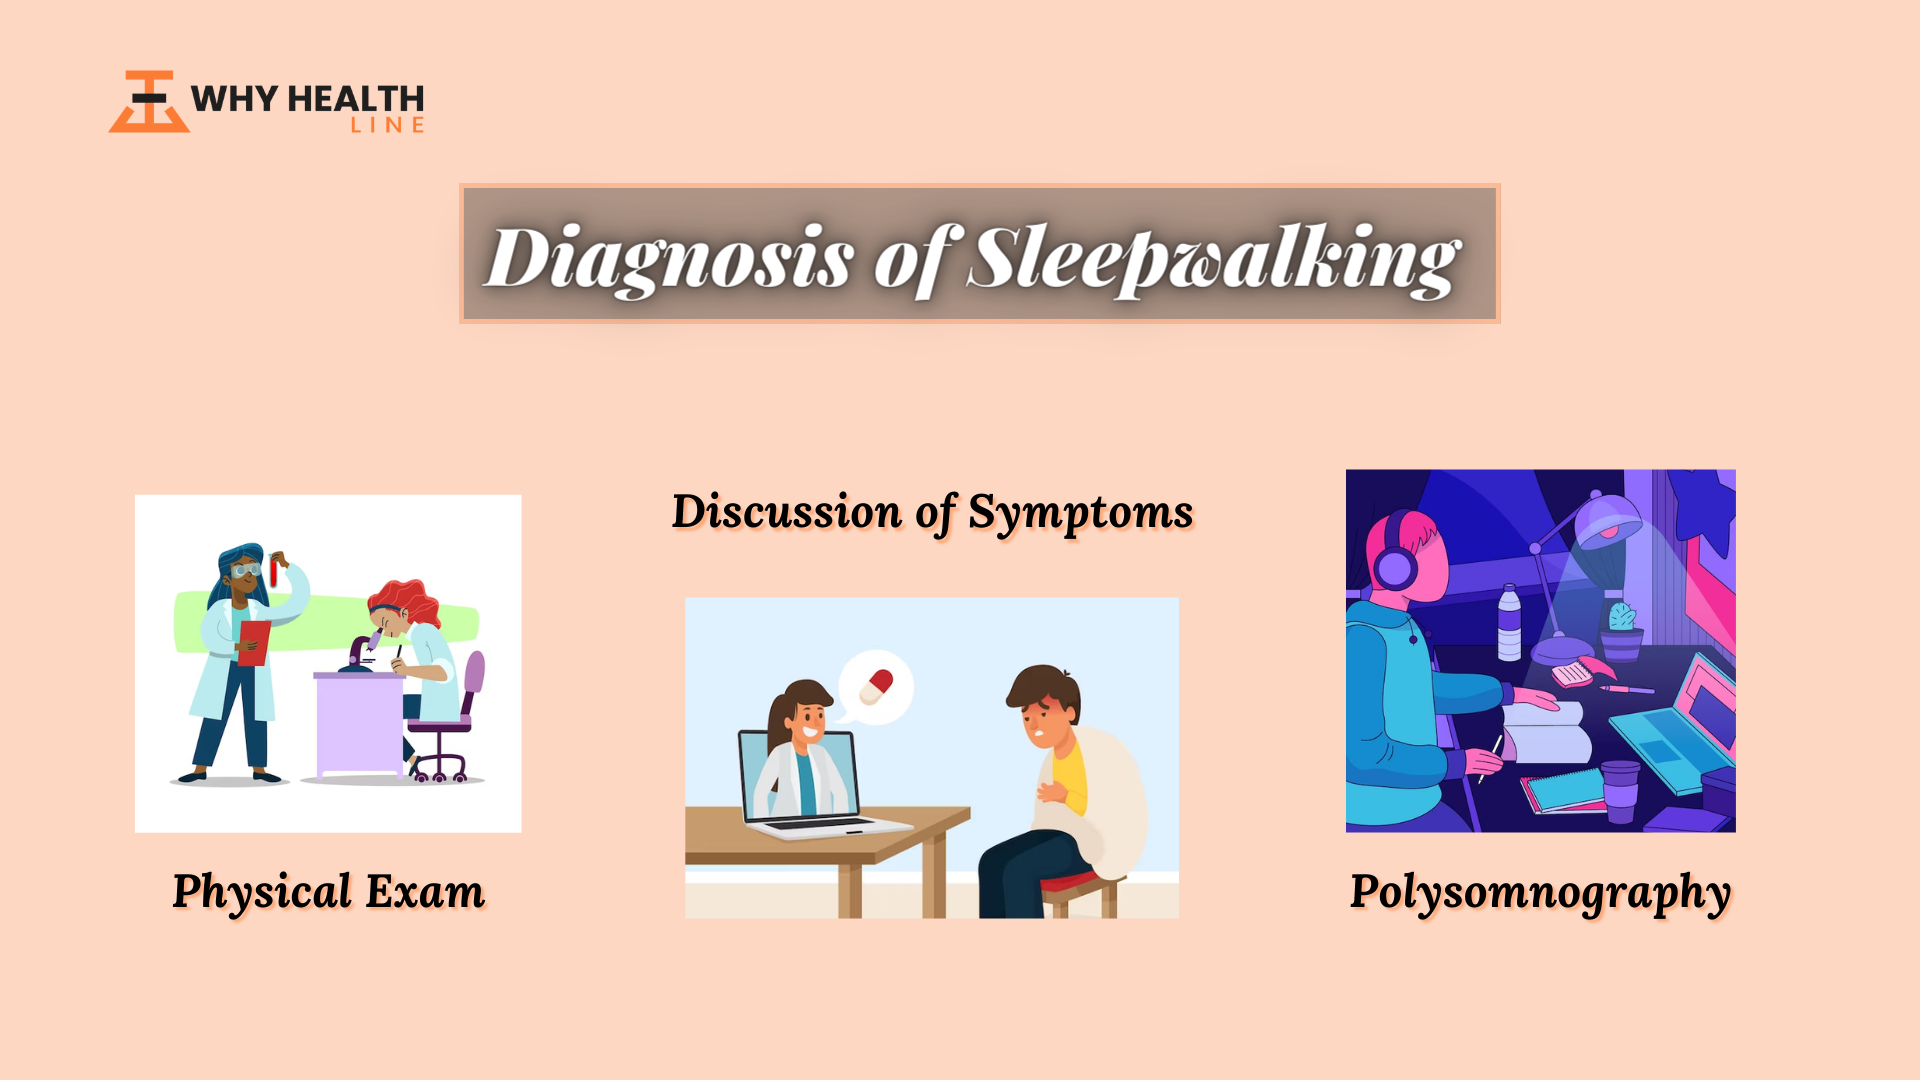 Diagnosis of Sleepwalking